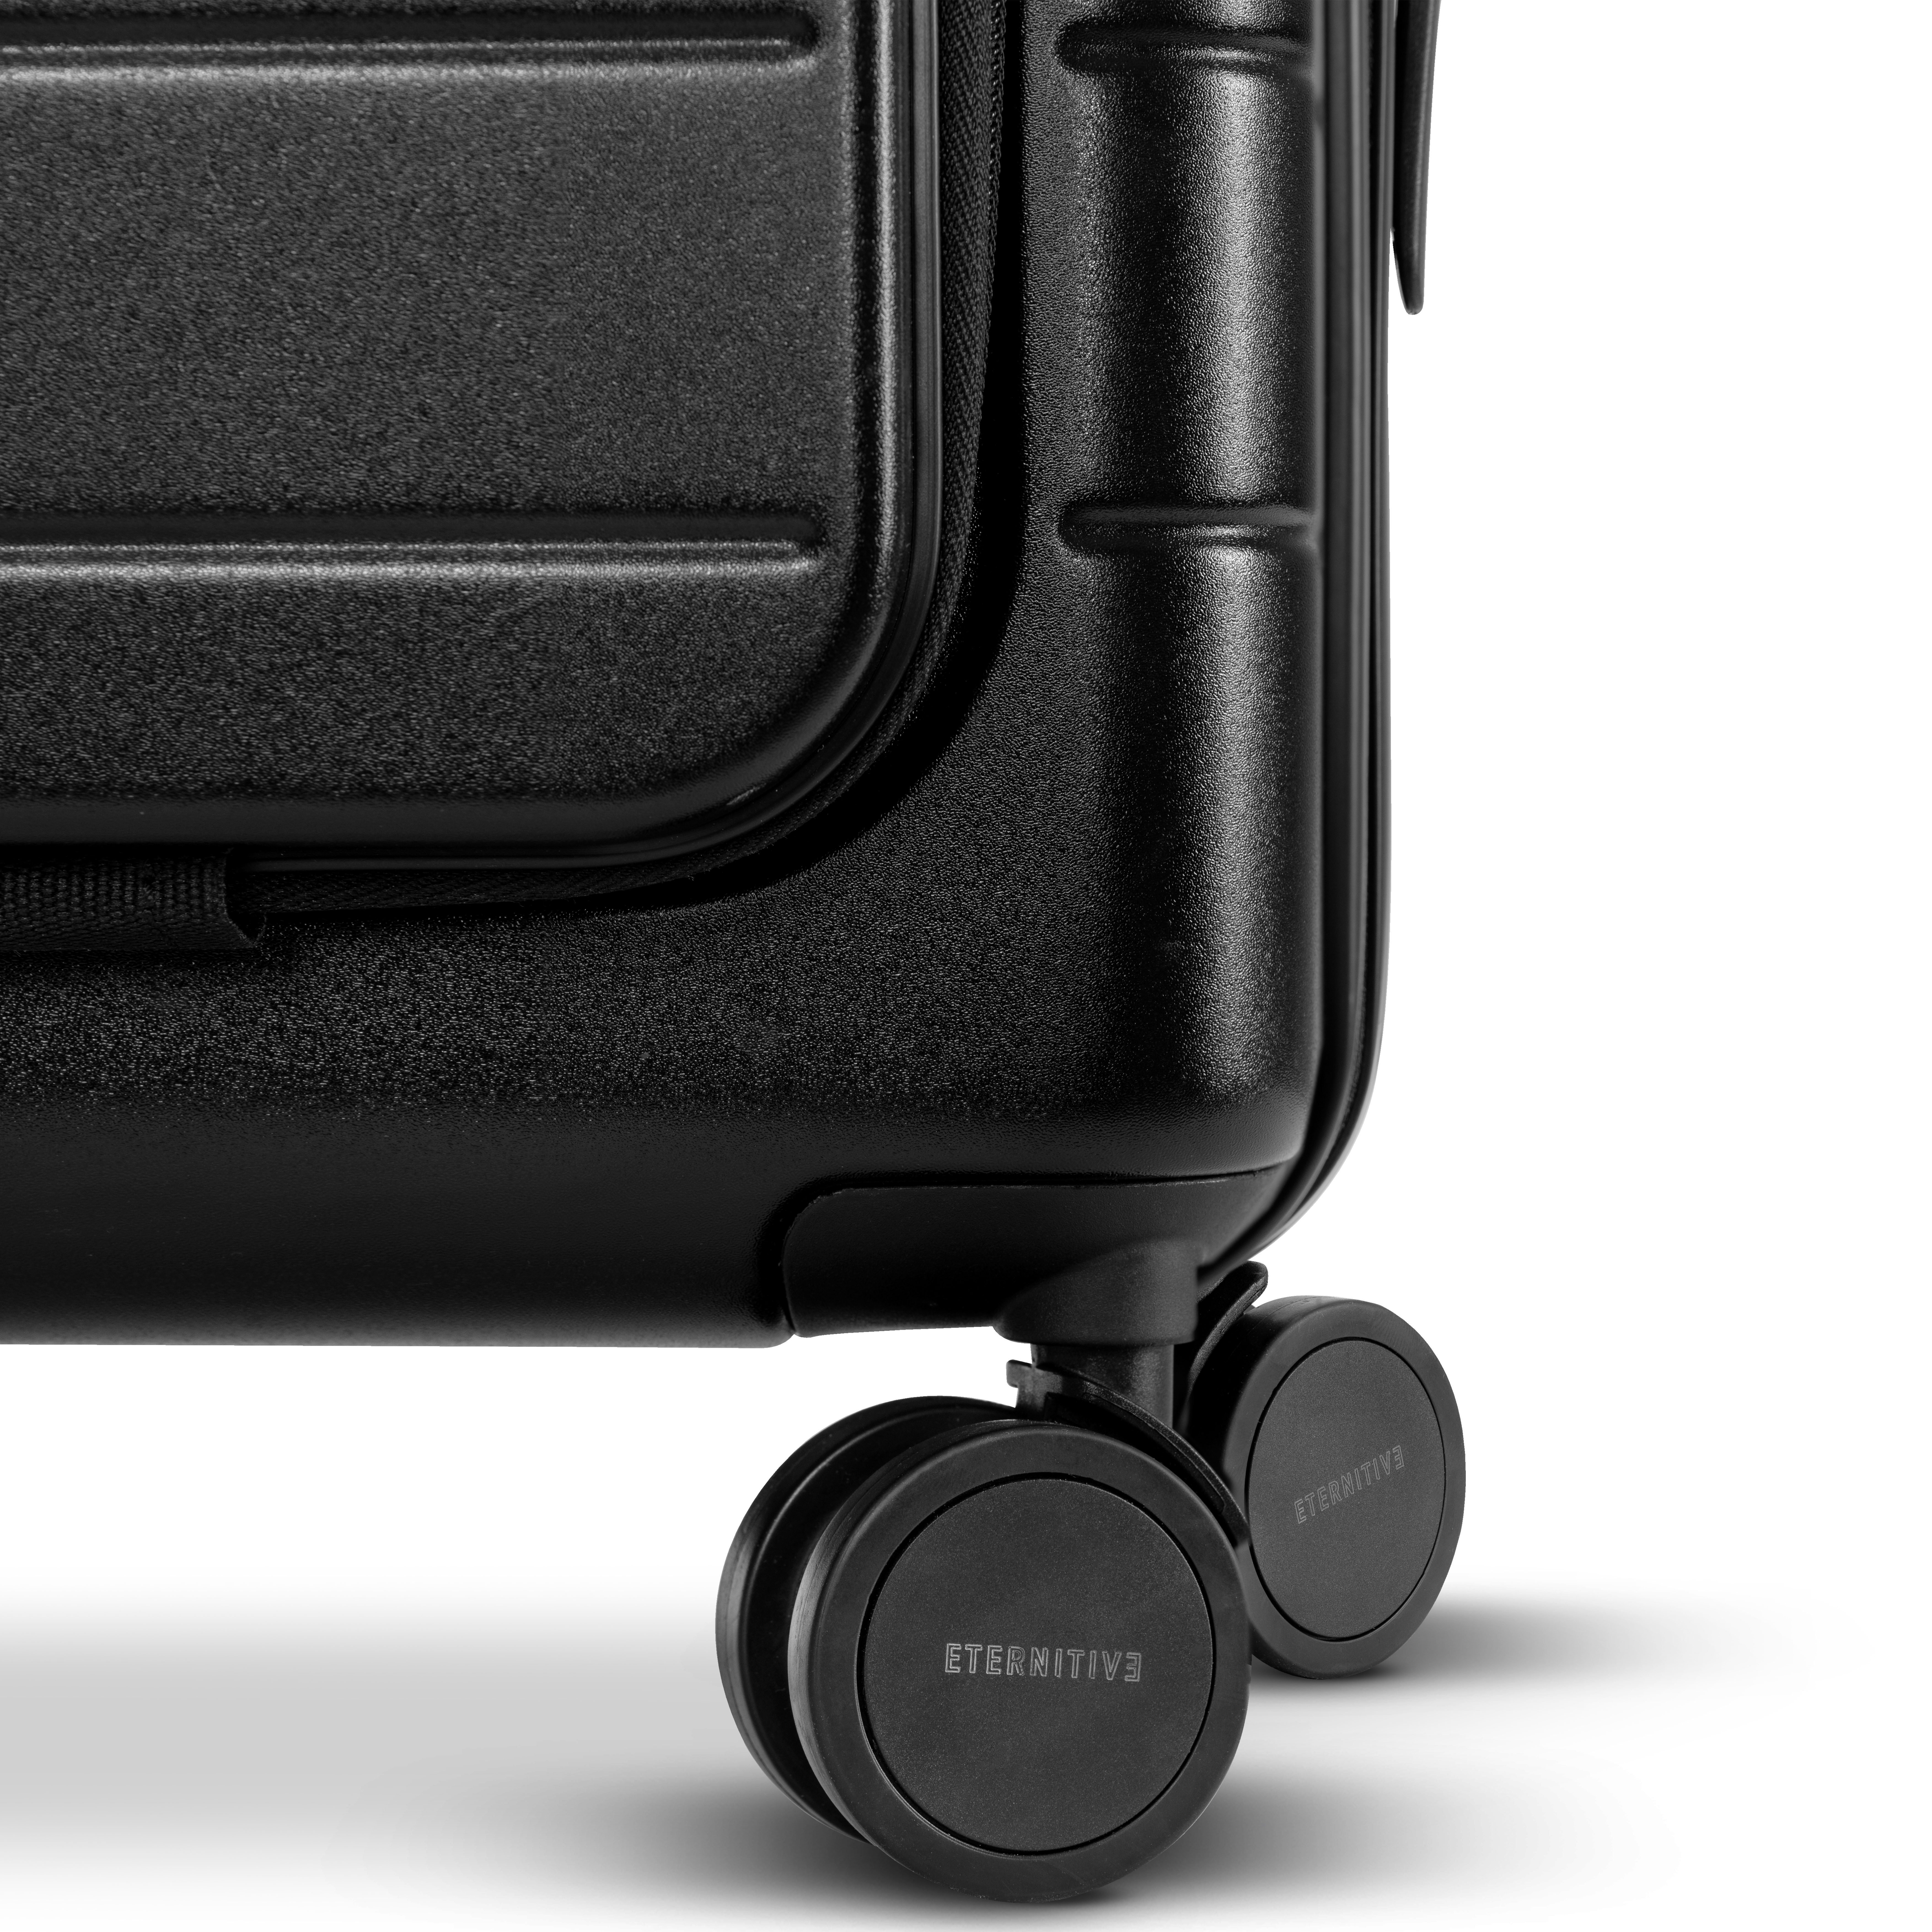 E3 set schwarz: \n Handgepäck plus + Mittelgroßer Koffer + Großer Koffer